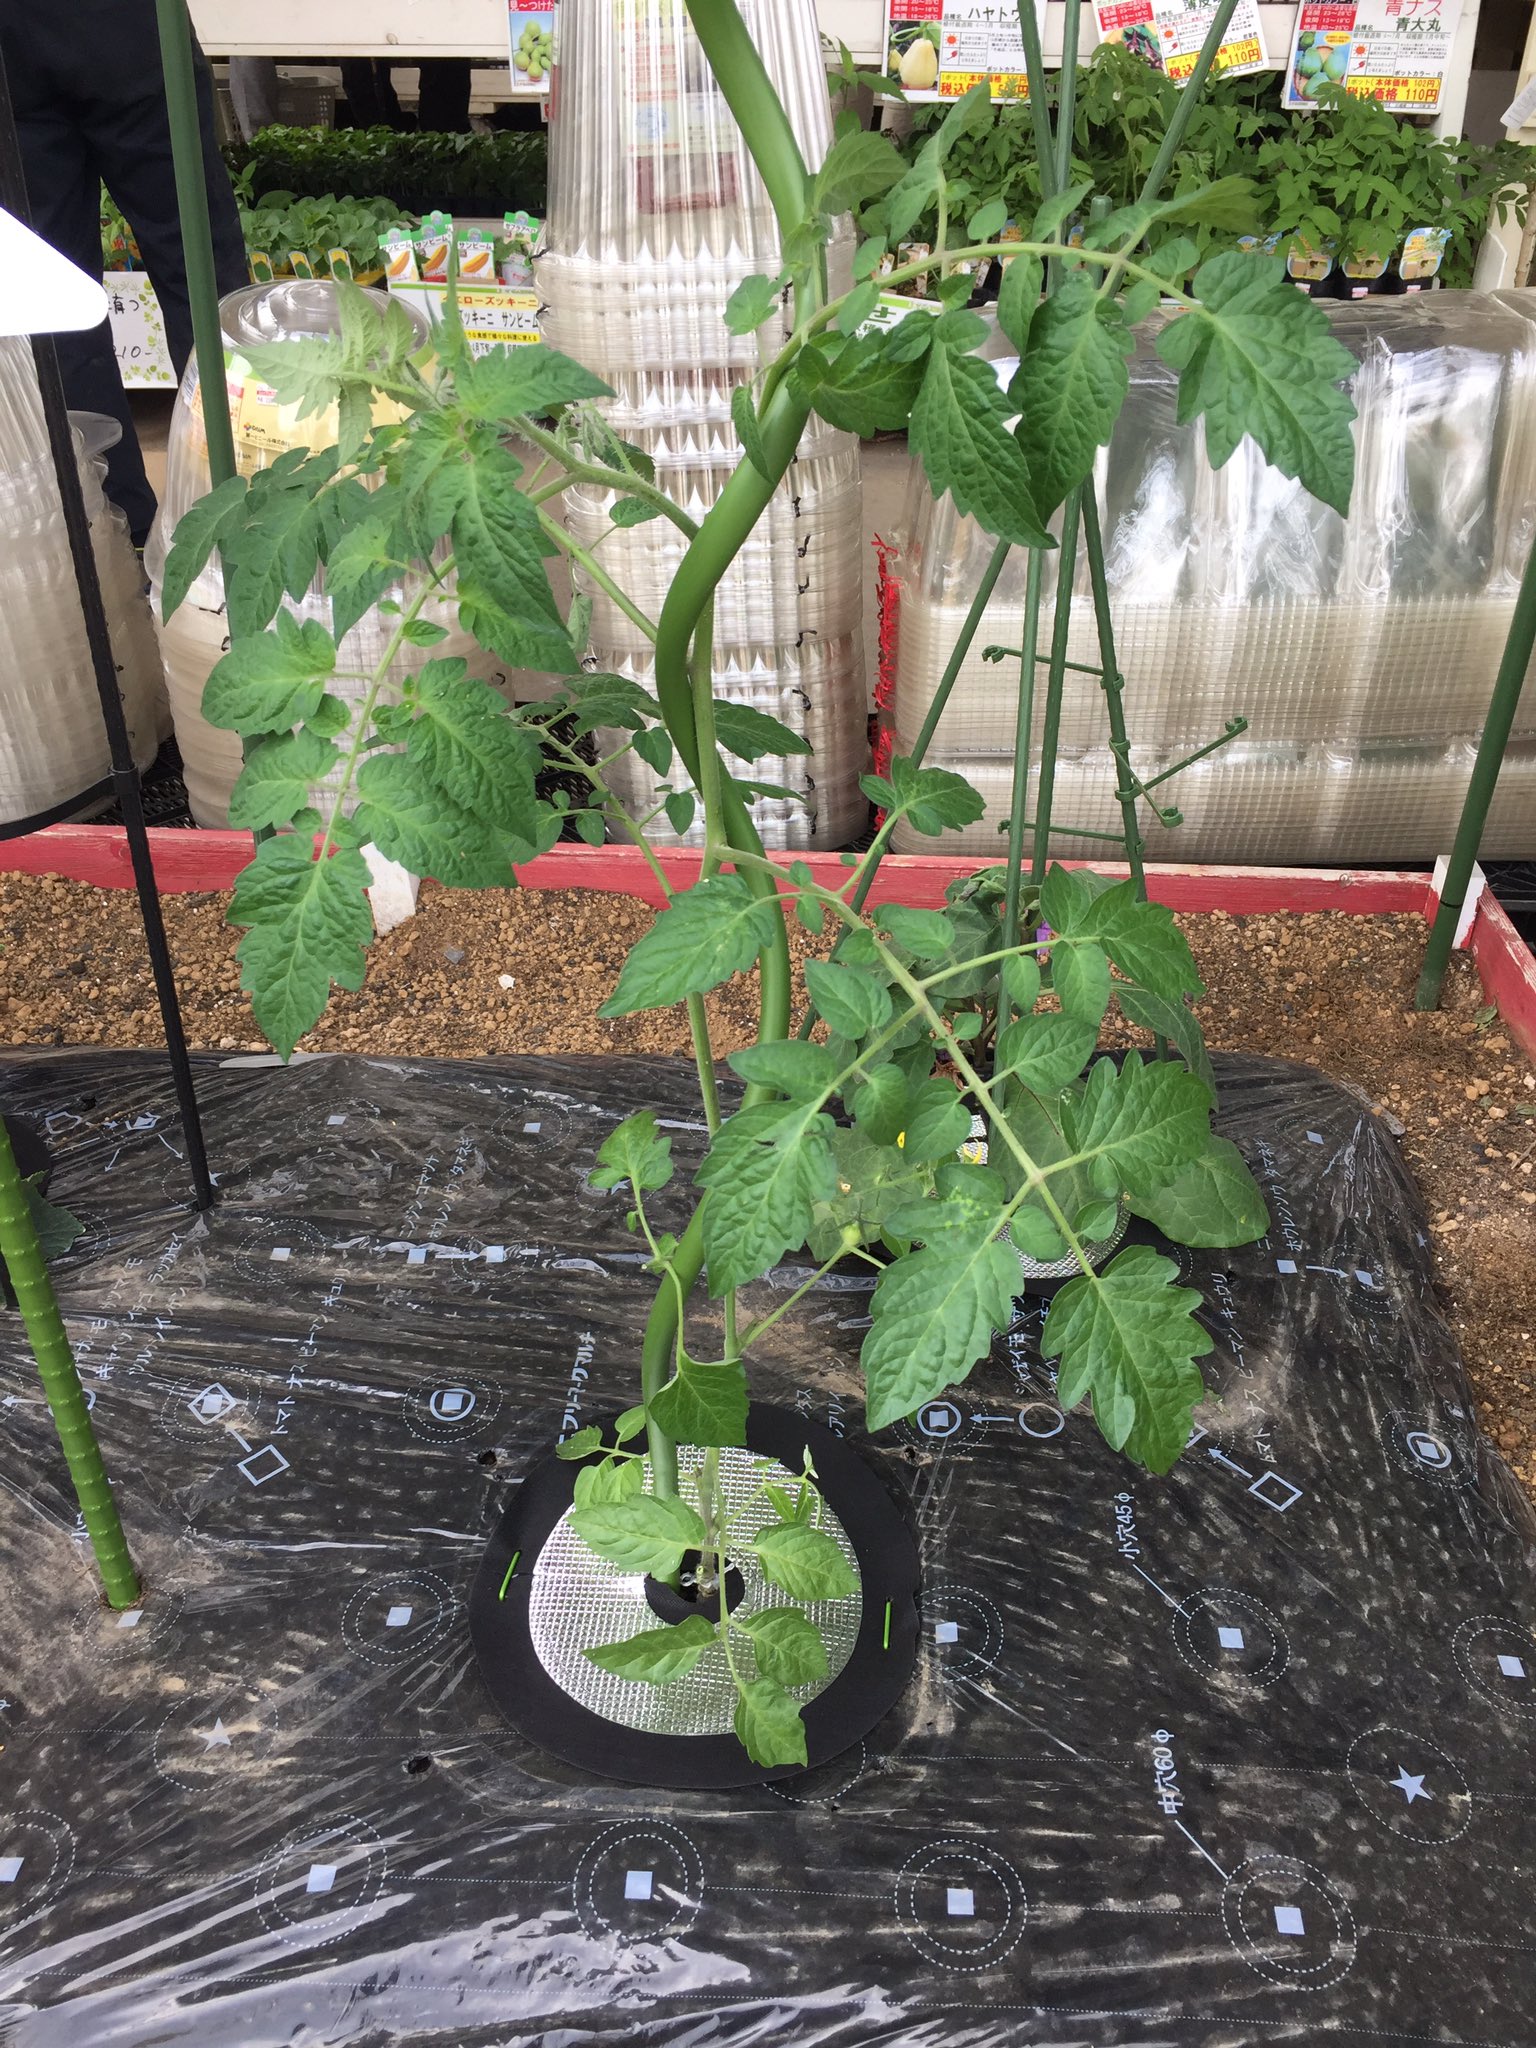 ジョイフル本田 ガーデンセンター ガーデンセンター幸手店 埼玉 夏野菜がグングン育っていると思います ٩ W و トマト栽培に便利な支柱 トマポール はいかがでしょう ラセン状に伸びるトマトには ラセン状の支柱がおすすめ ヒモでしばらなく